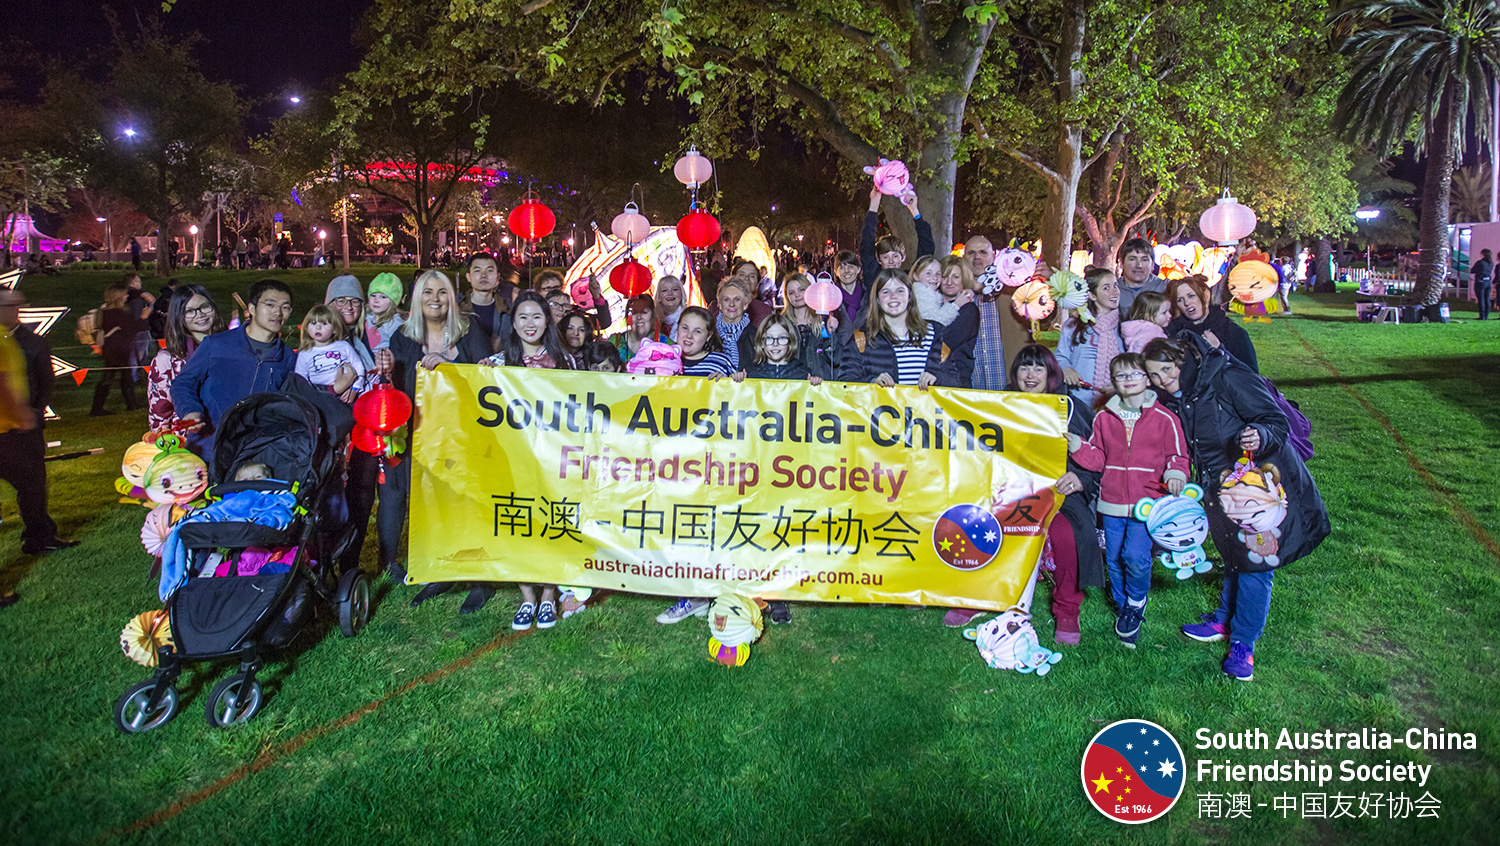 South Australia-China Friendship Society Moon Lantern Parade 2017